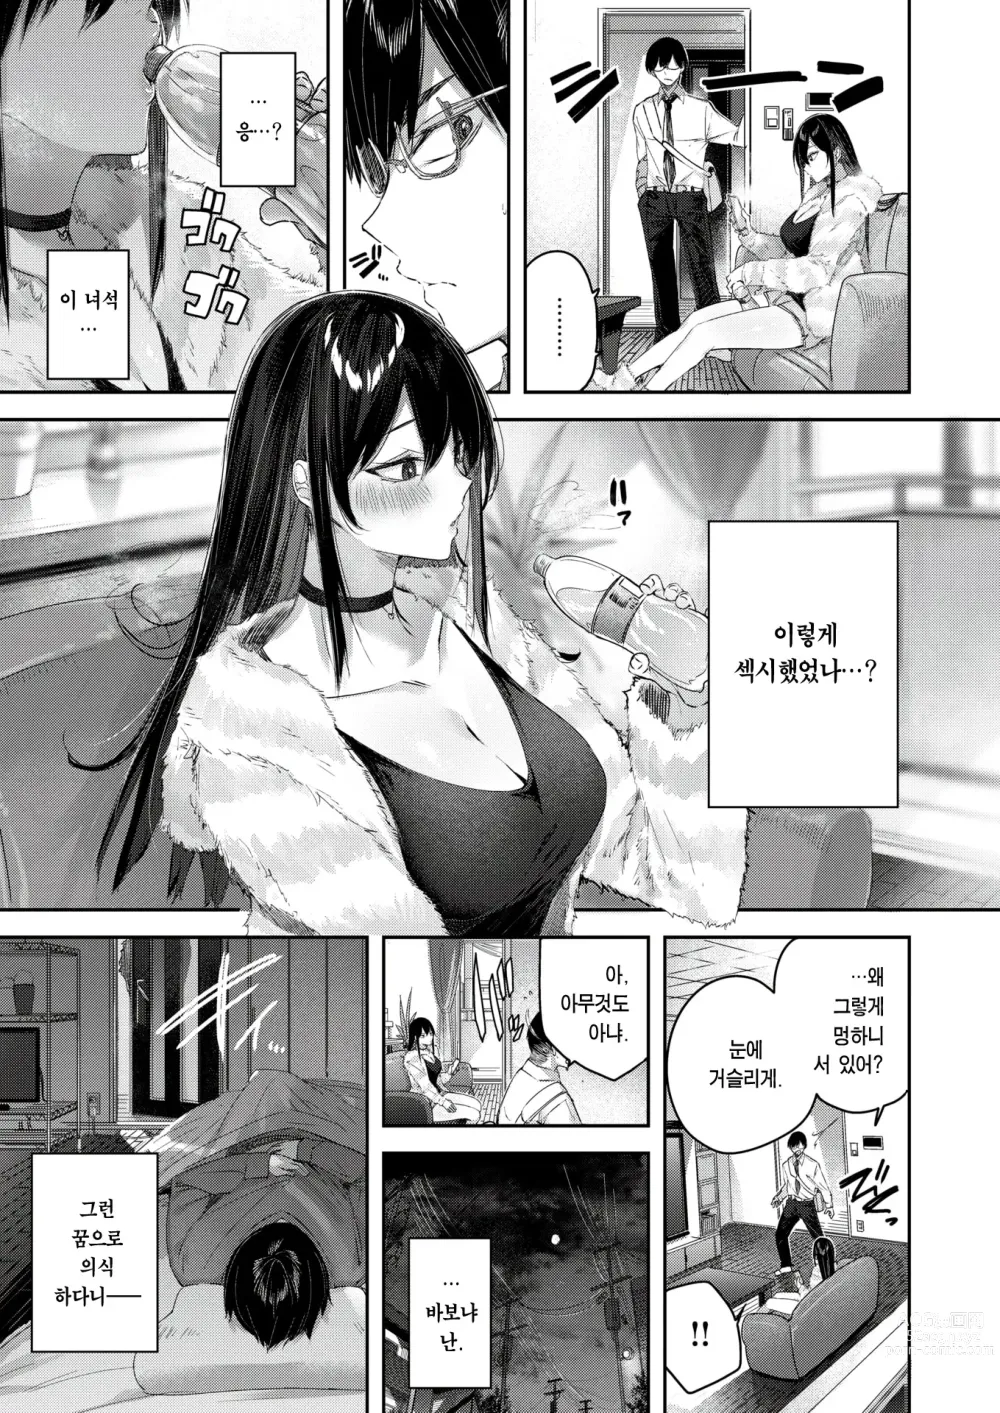 Page 7 of manga Imouto Pudding